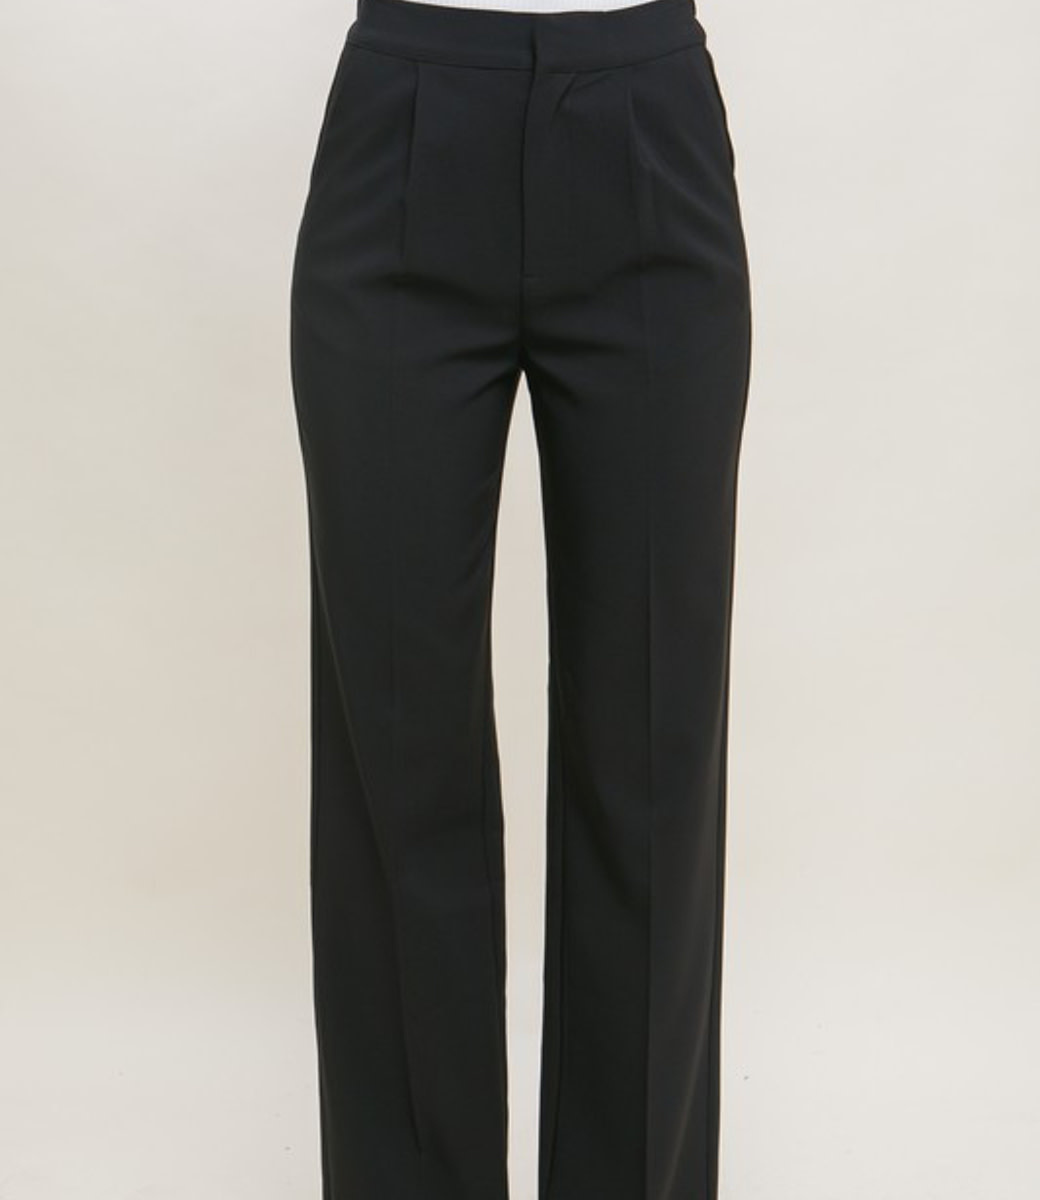 Dress Pants w/ Elastic Waist - Black - Boutique 23